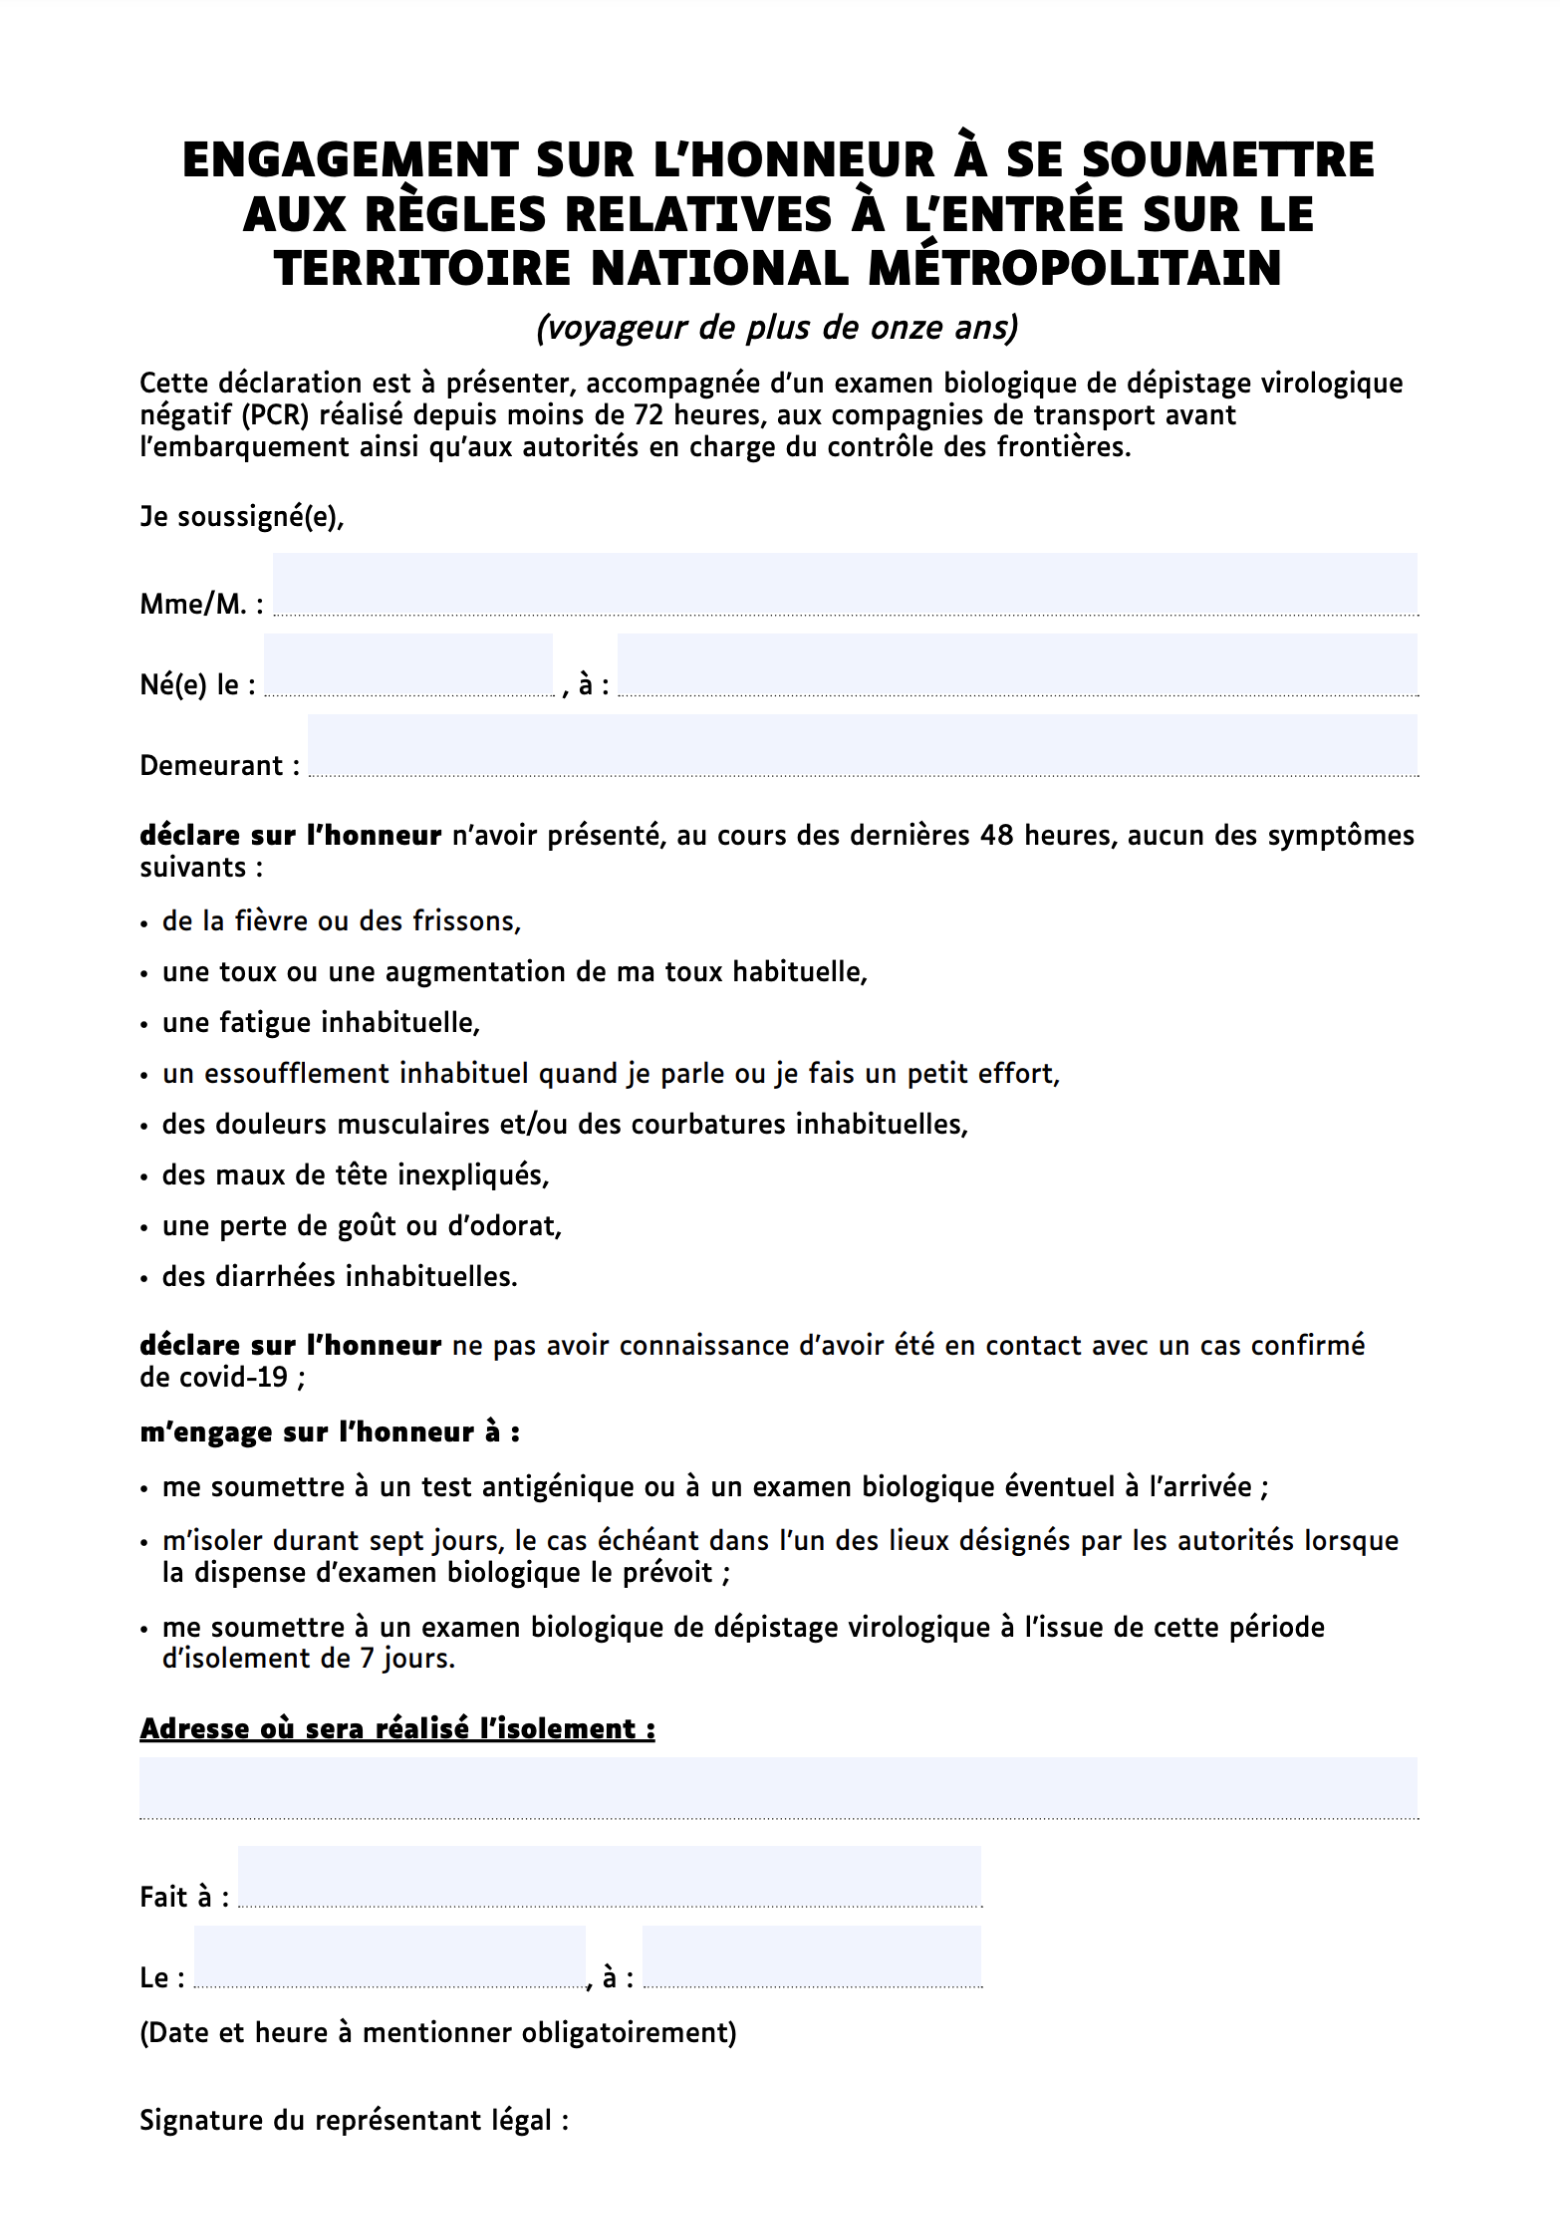 Форма декларации для путешественников во Франции. Источник: interieur.gov.fr